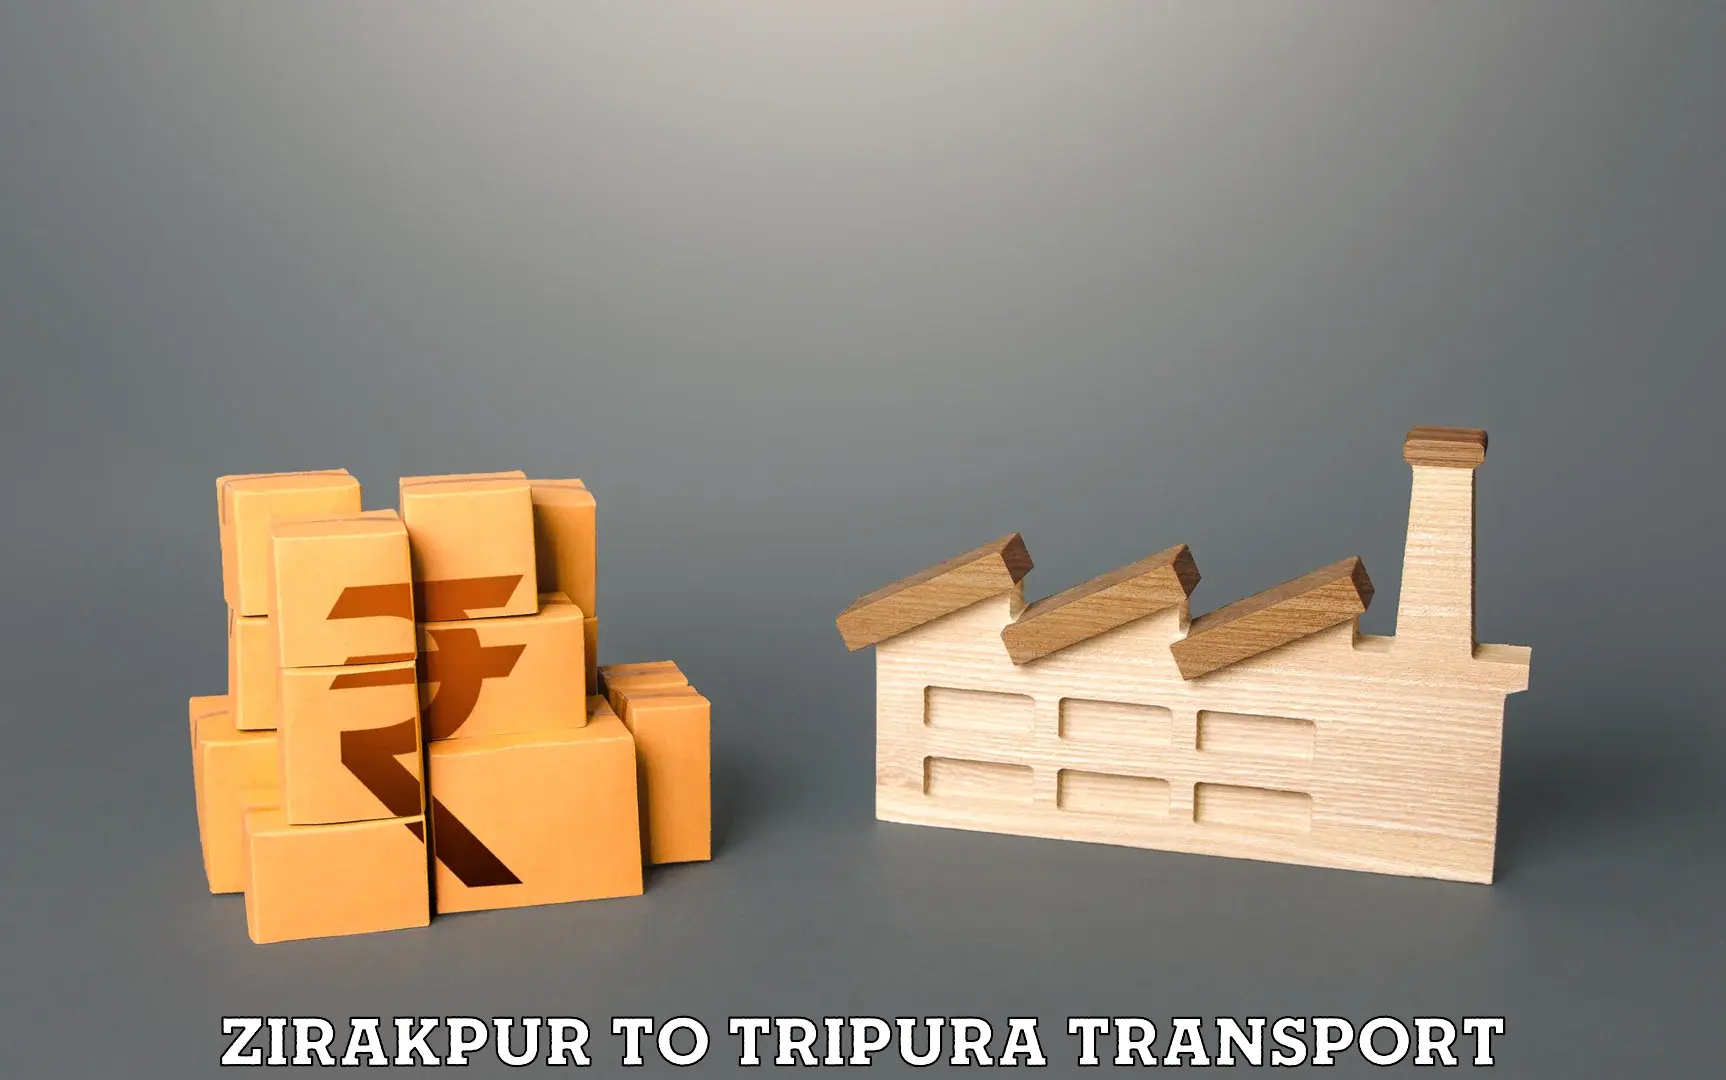 Nearby transport service Zirakpur to IIIT Agartala